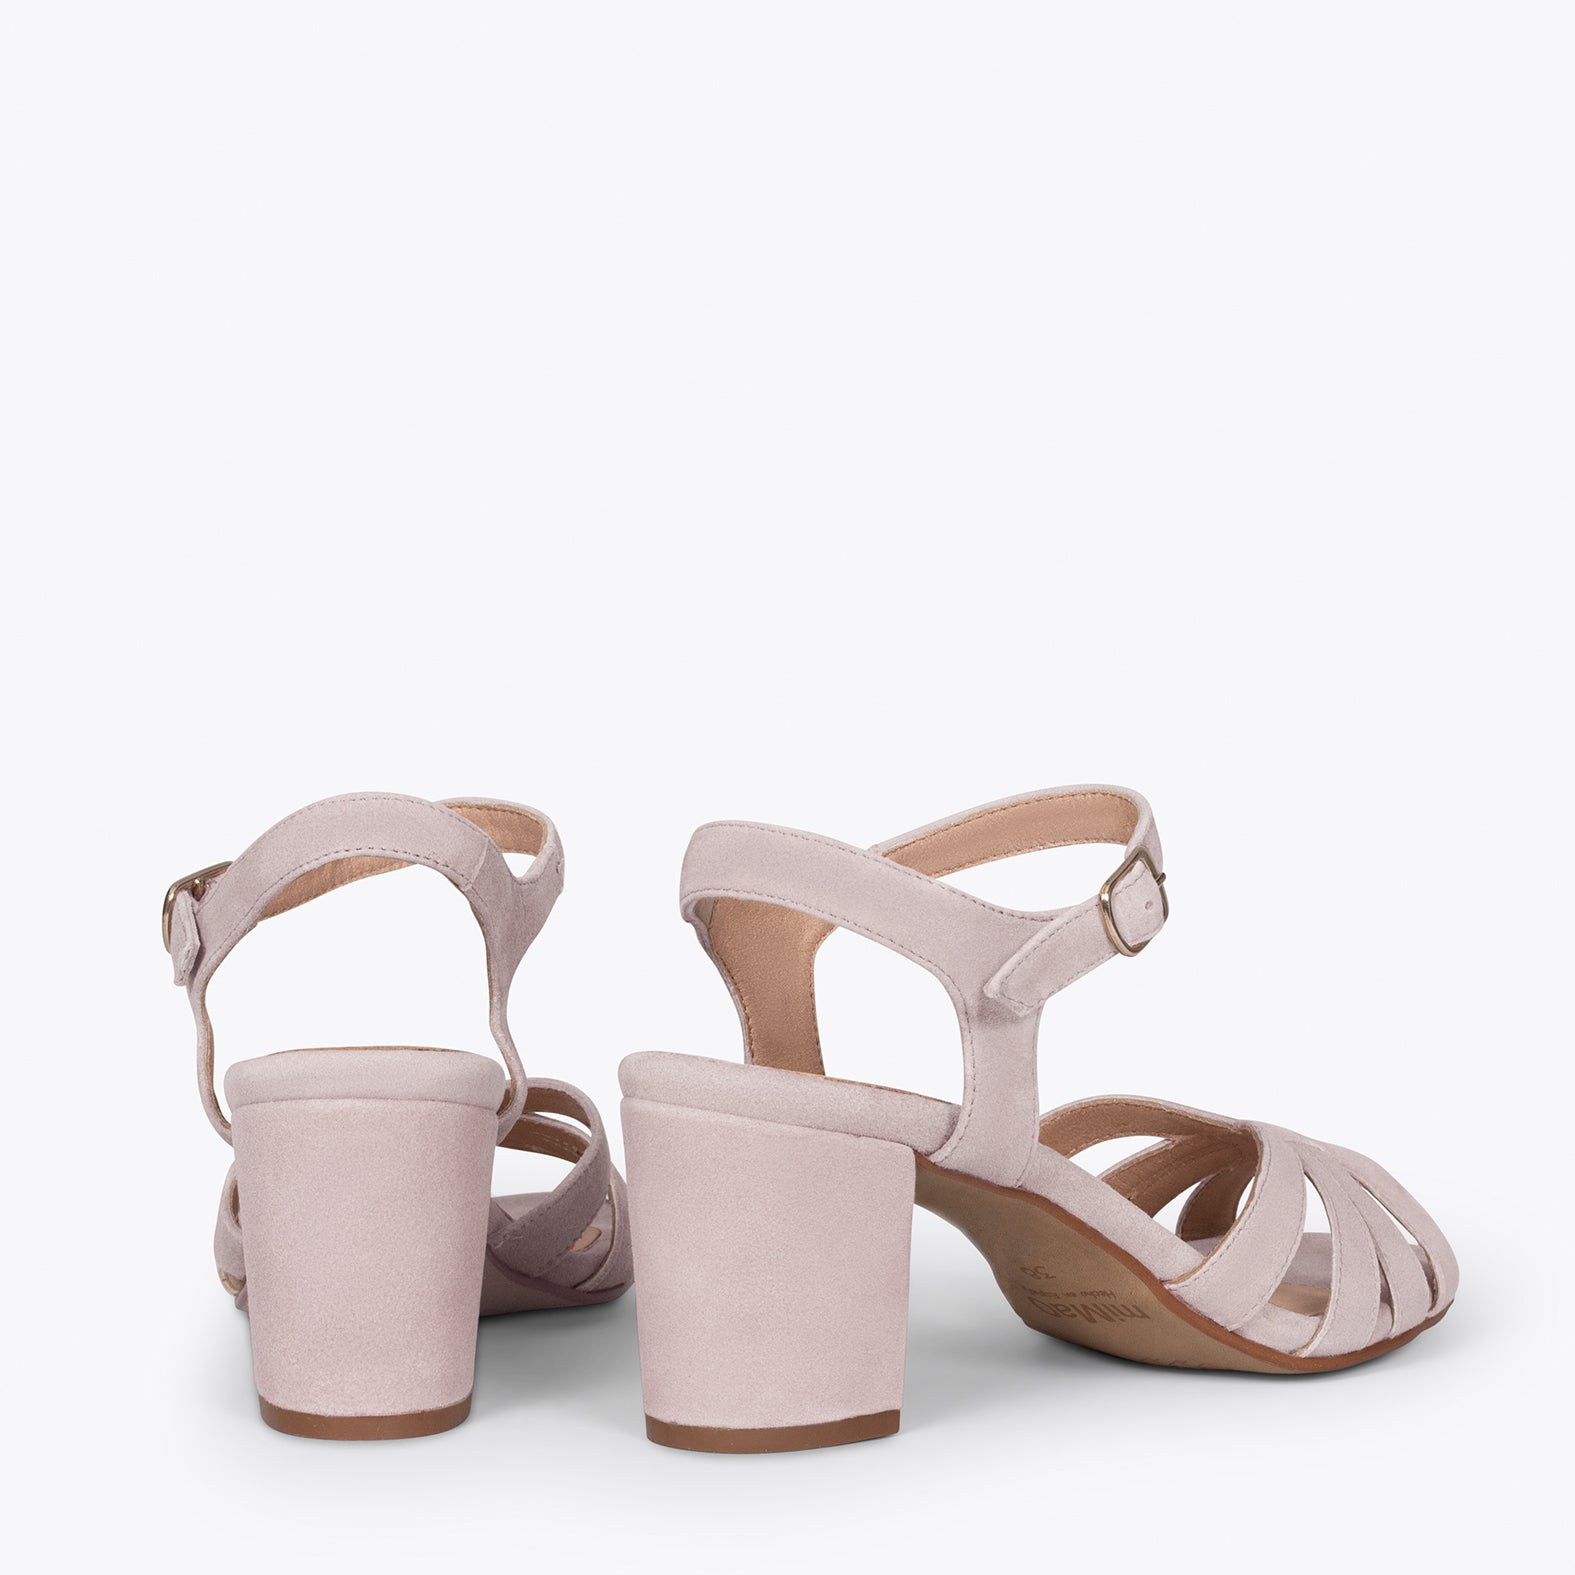 MUSE – PINK block heel sandals